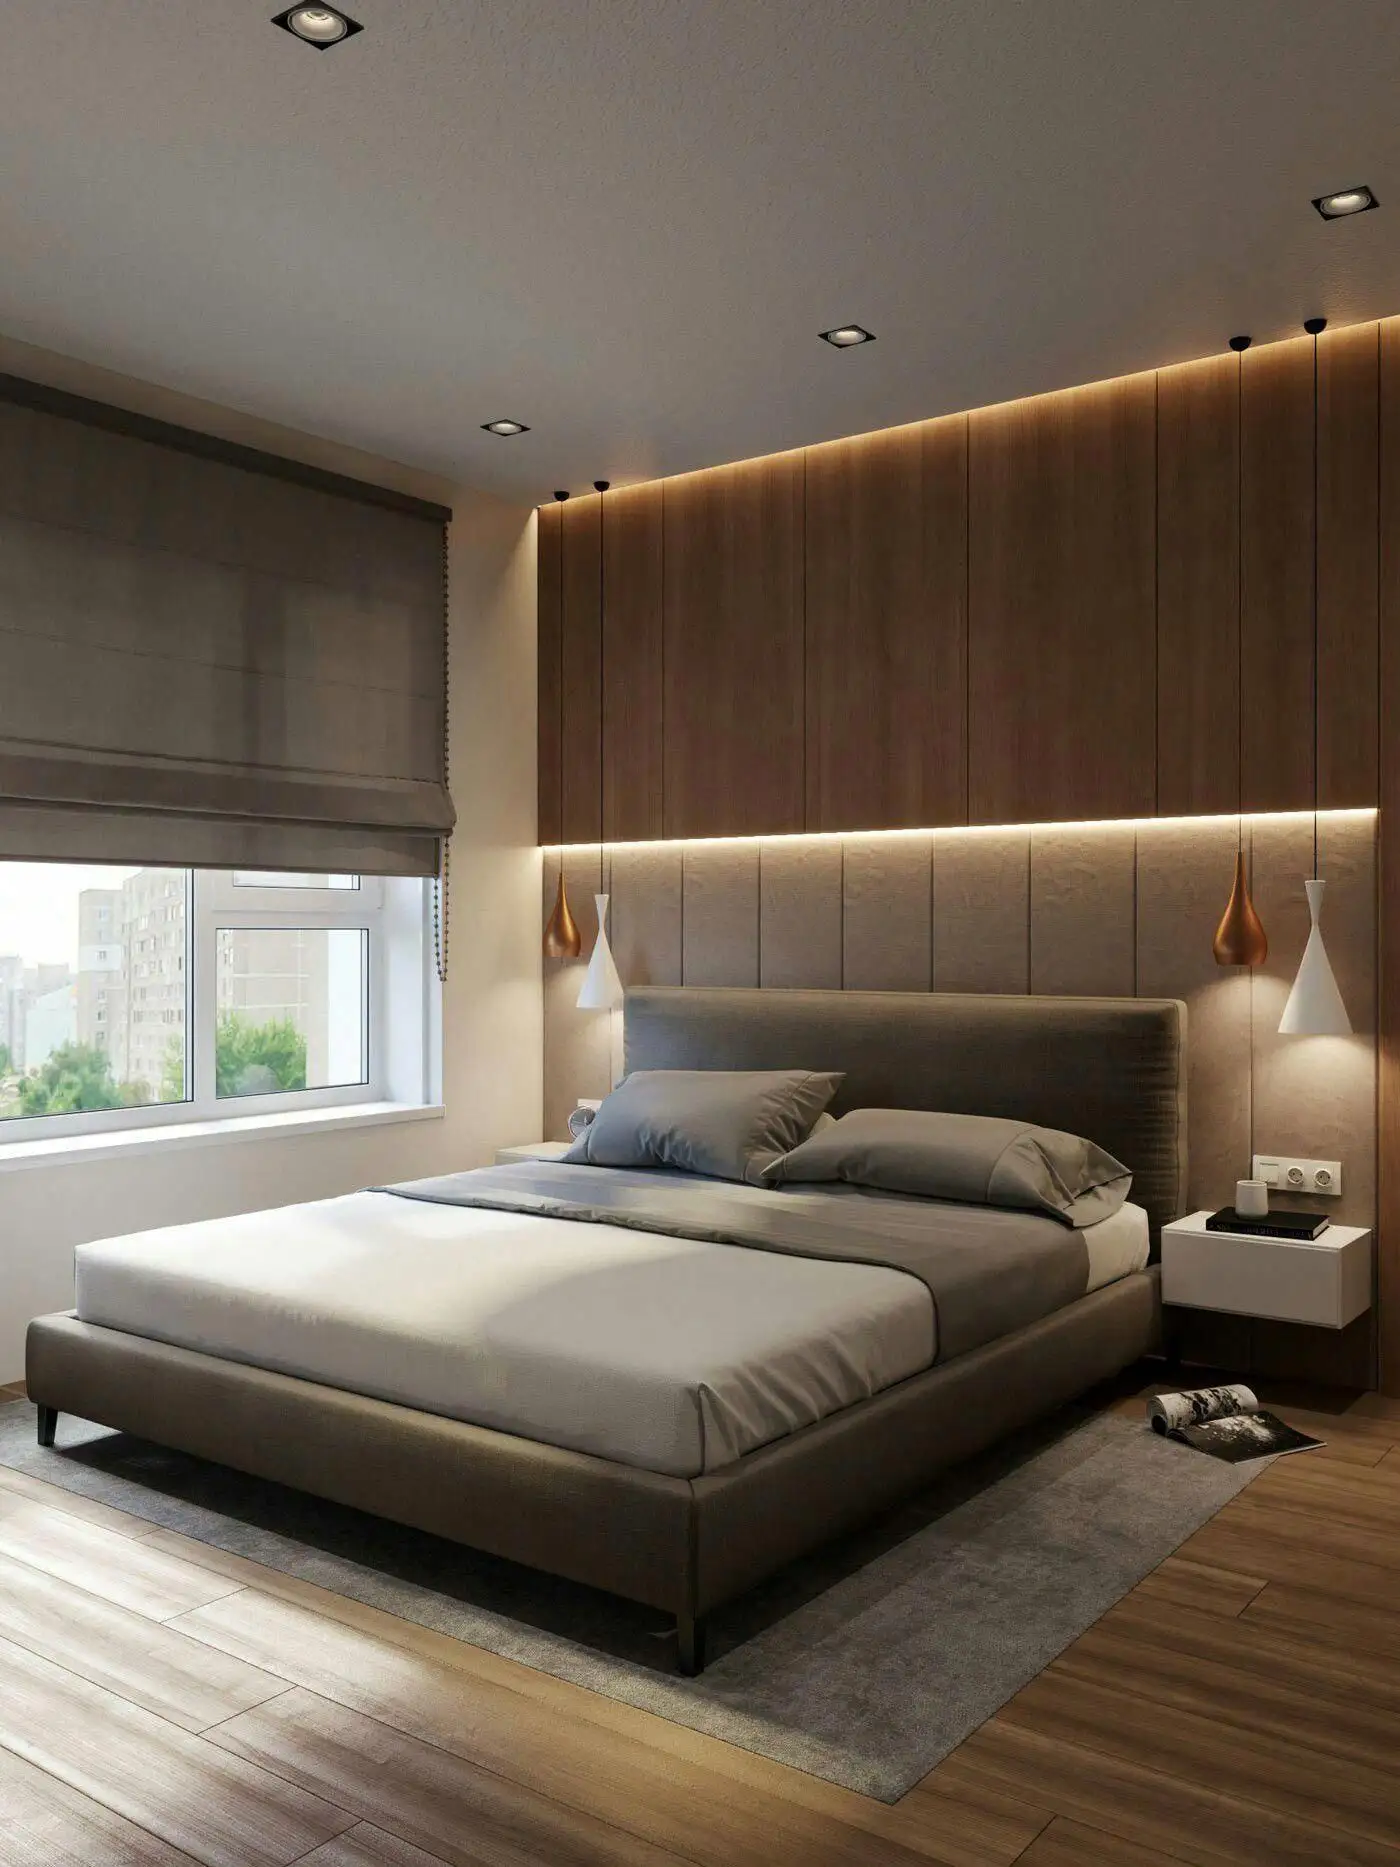 Роскошный дизайн, индивидуальные наборы мебели для спальни, спальни, кровати, используемой в 5-звездочном гостиничном номере, гостиничная мебель